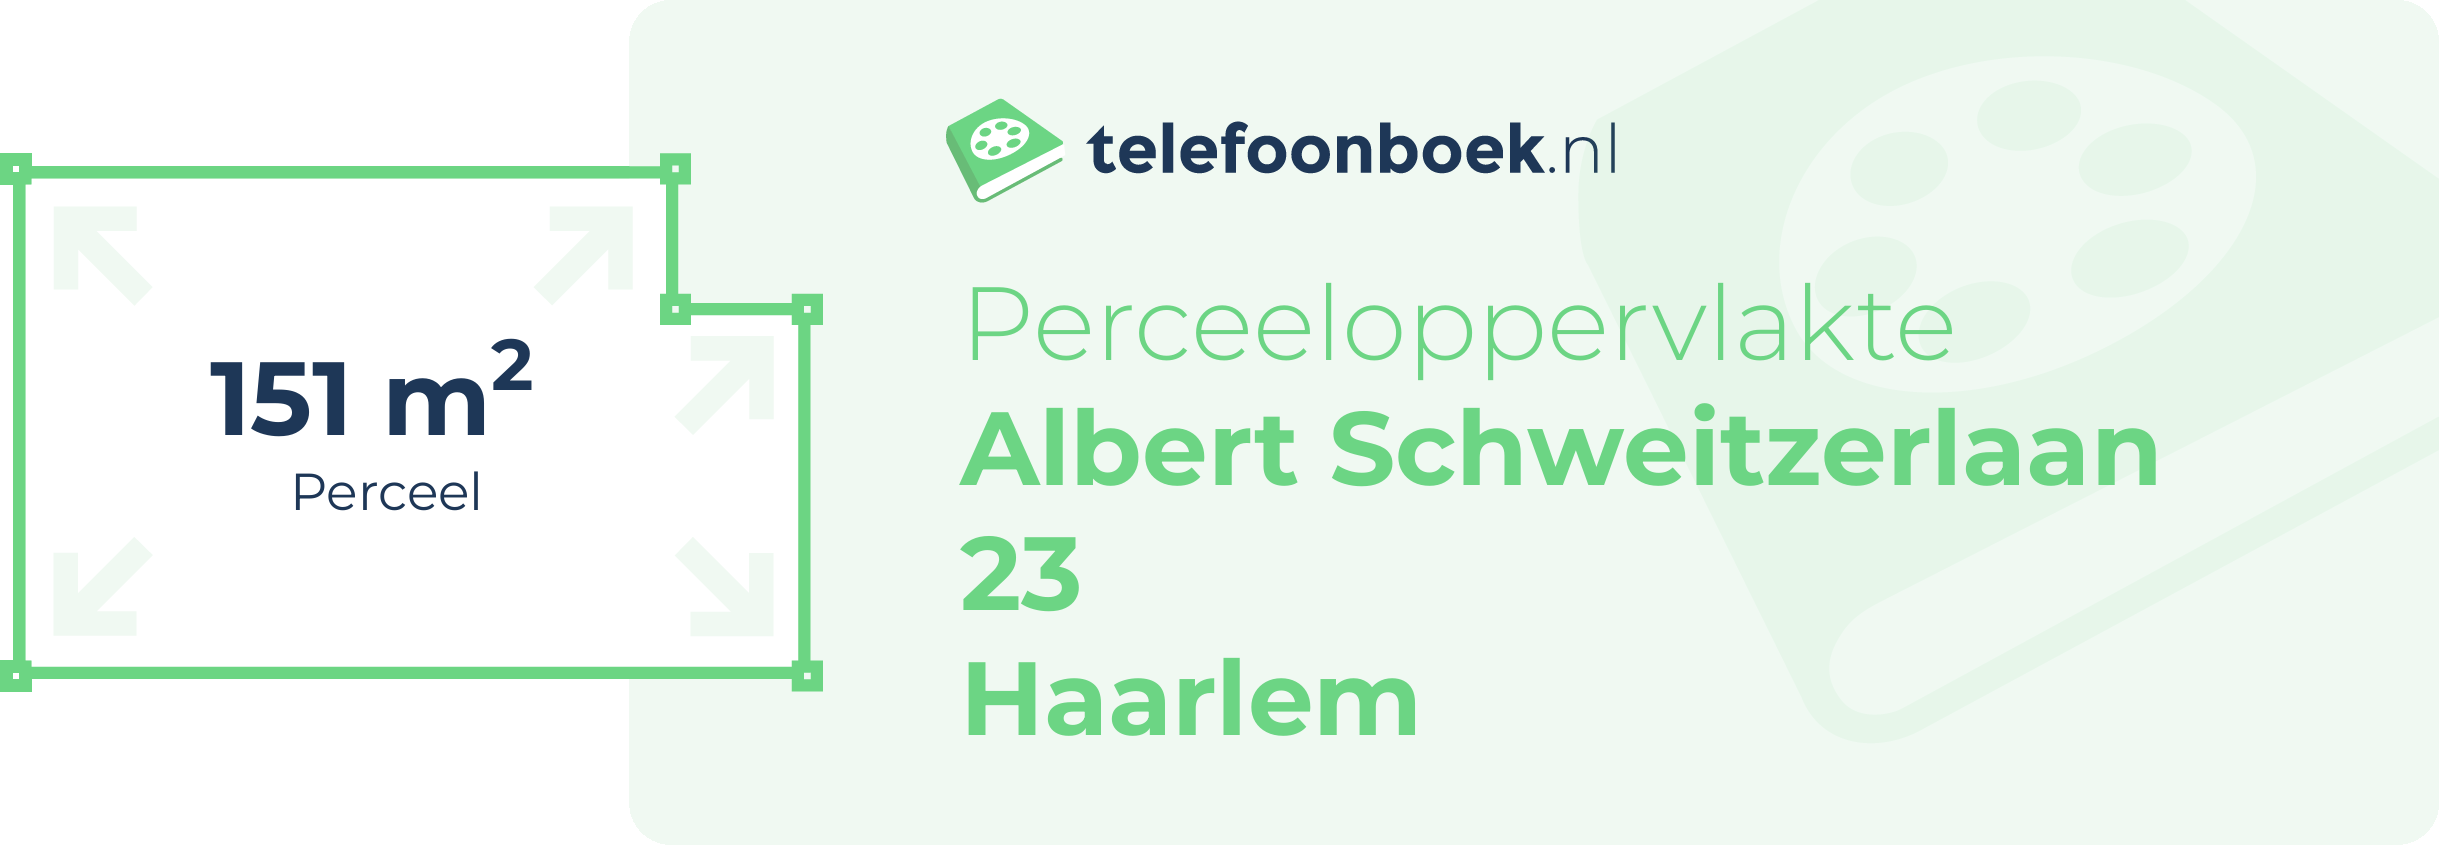 Perceeloppervlakte Albert Schweitzerlaan 23 Haarlem